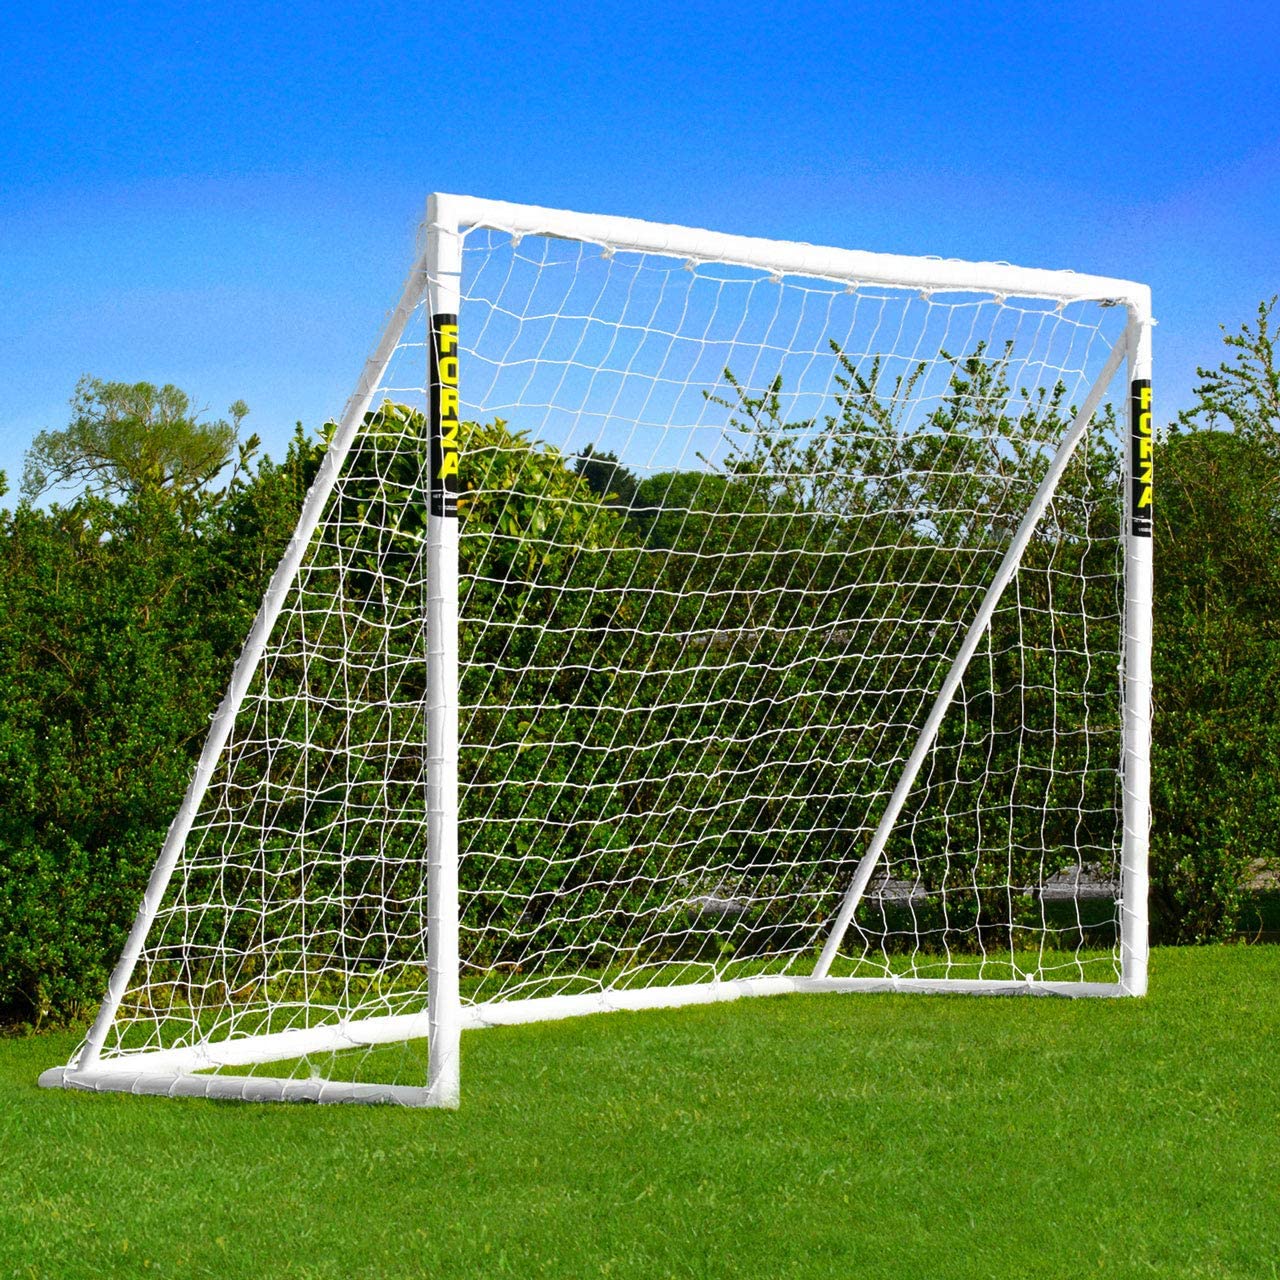 New Soccer Goal Net Large 8' x 5' Soccer Goal Steel Frame Kids Sports Training 